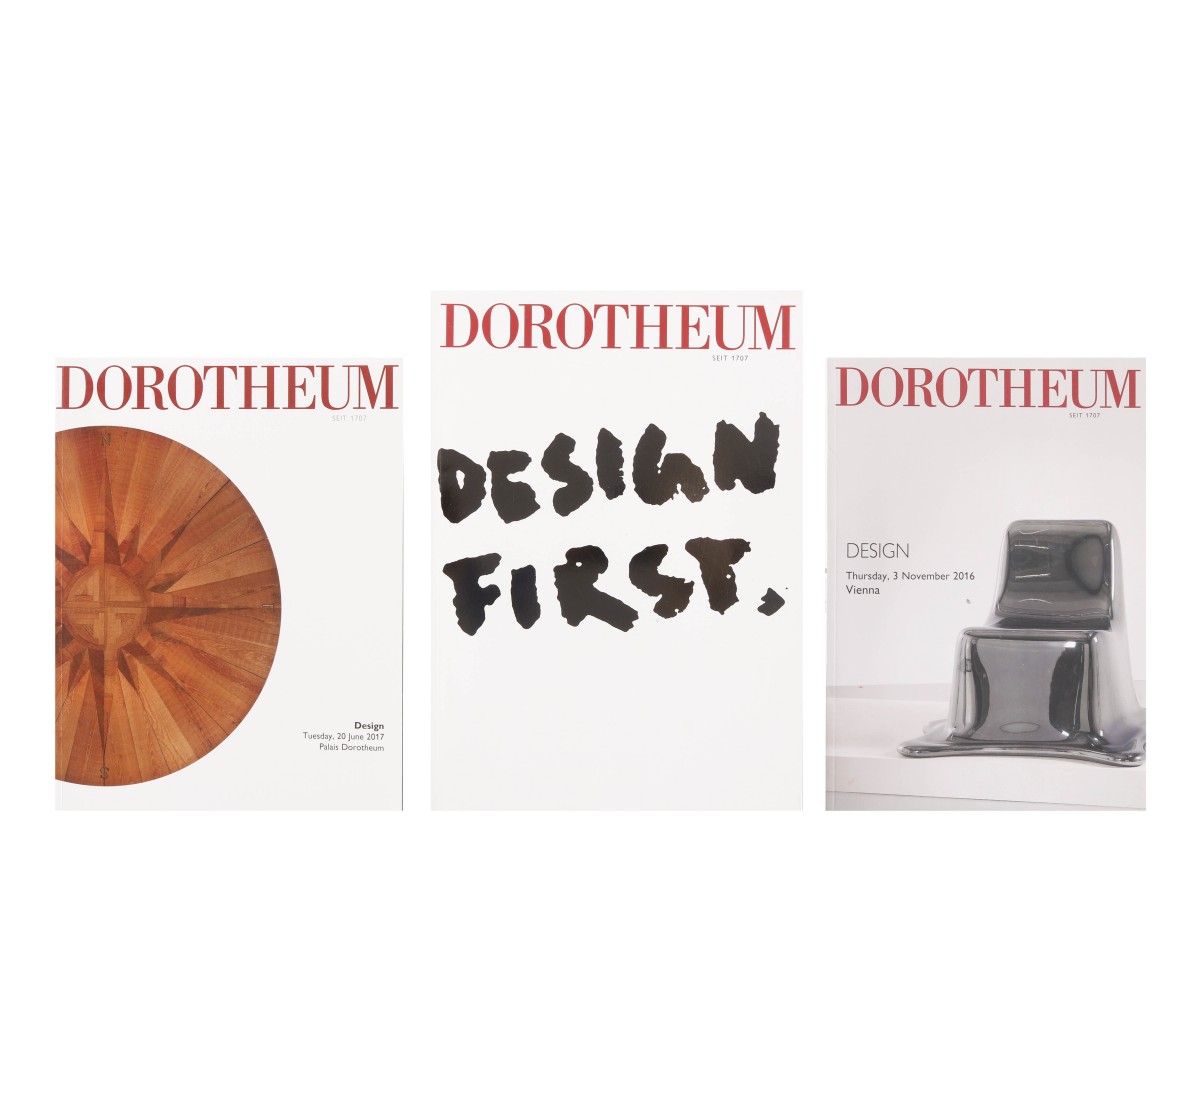 DOROTHEUM, DESIGN (3)